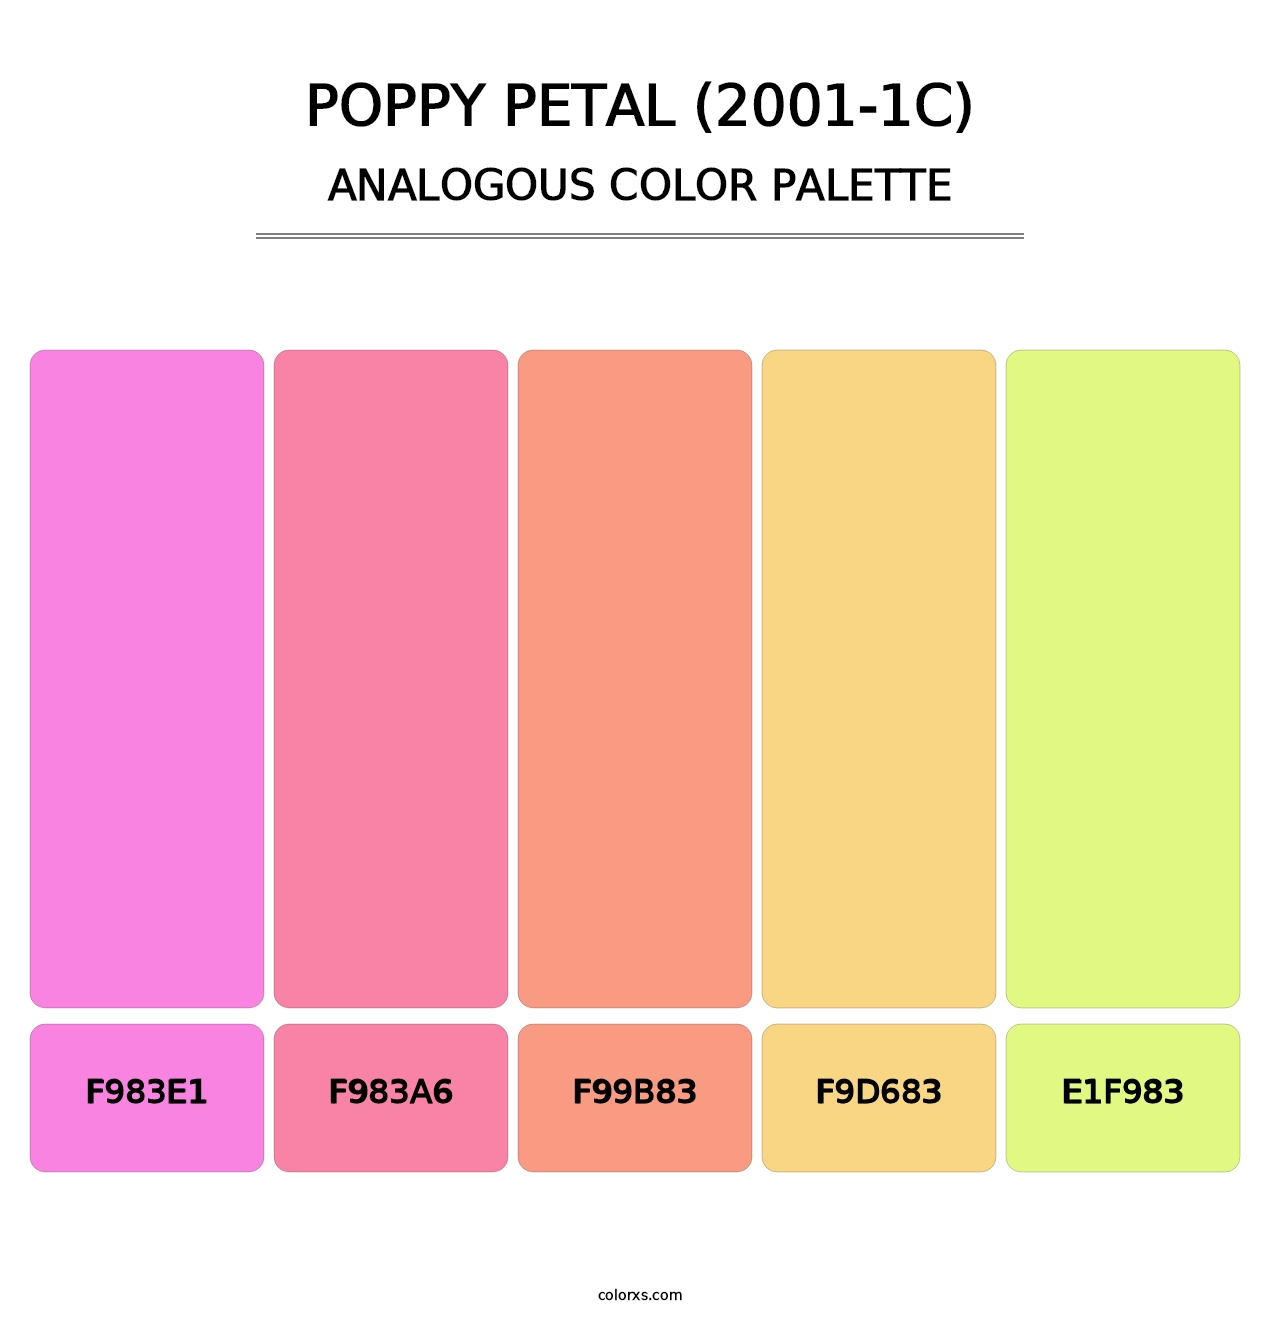 Poppy Petal (2001-1C) - Analogous Color Palette